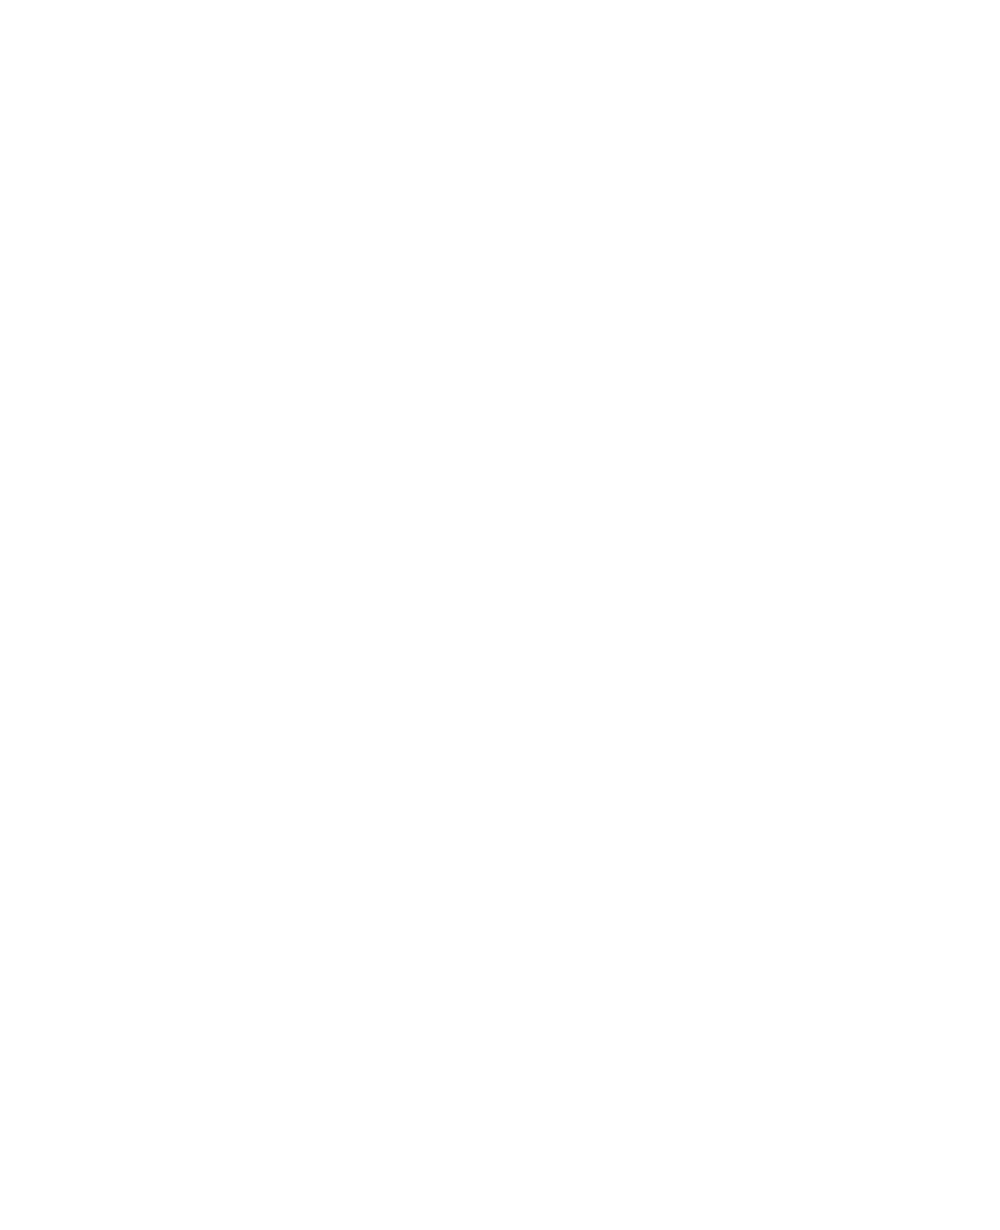 Green Budda - Akcesoria, olej, ekstrakty i kosmetyki CBD najwyższej jakości